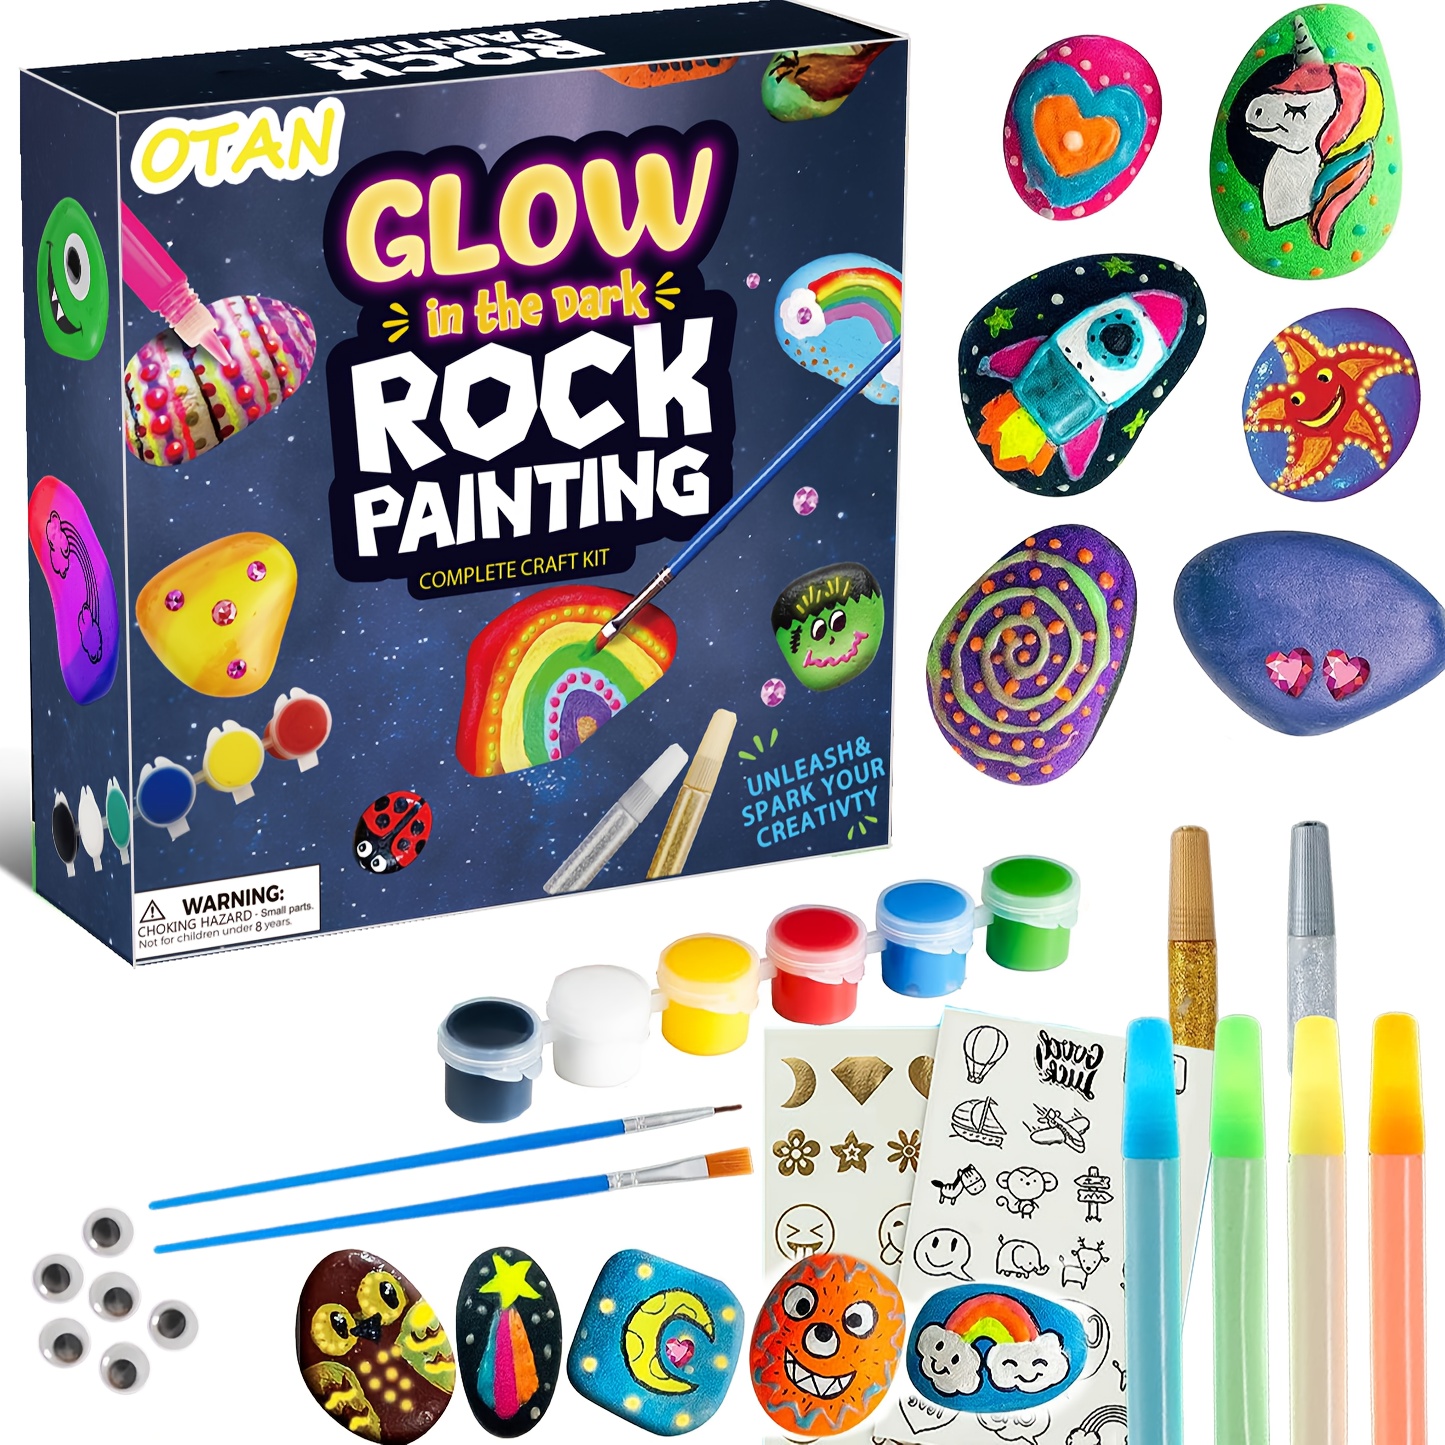 art kit for children